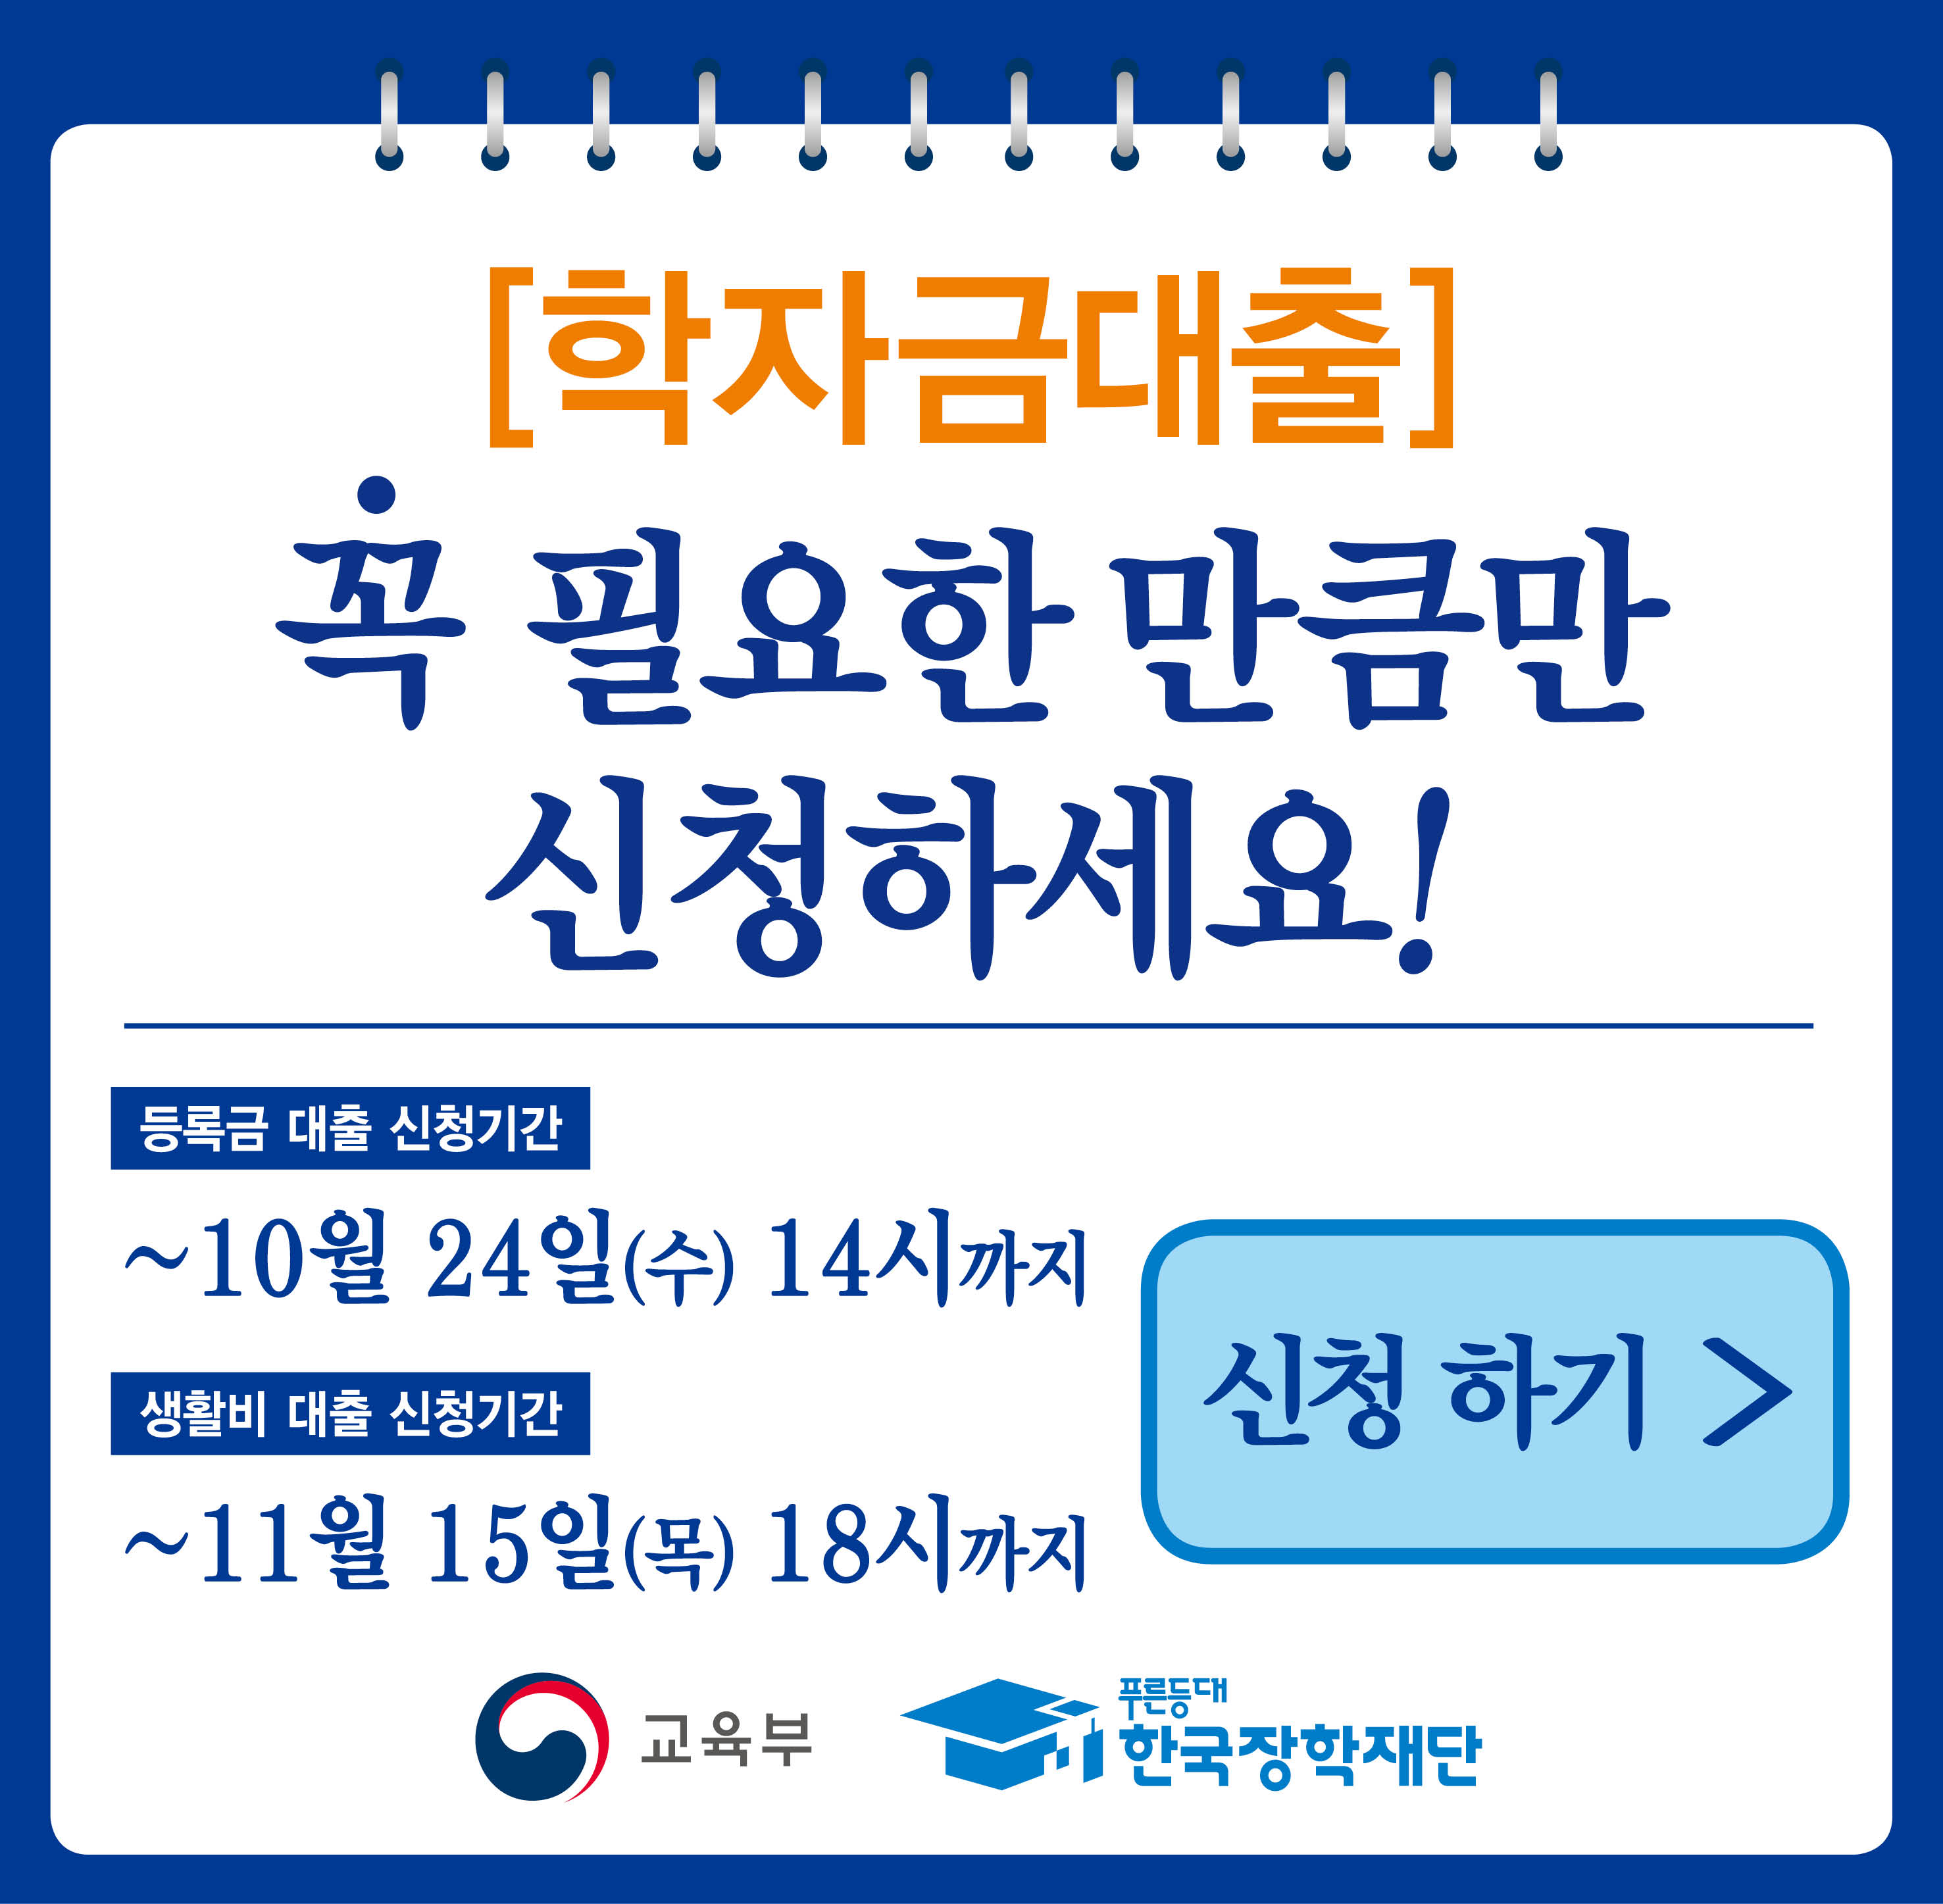  (붙임3) 2학기 학자금대출 팝업 최종.jpg